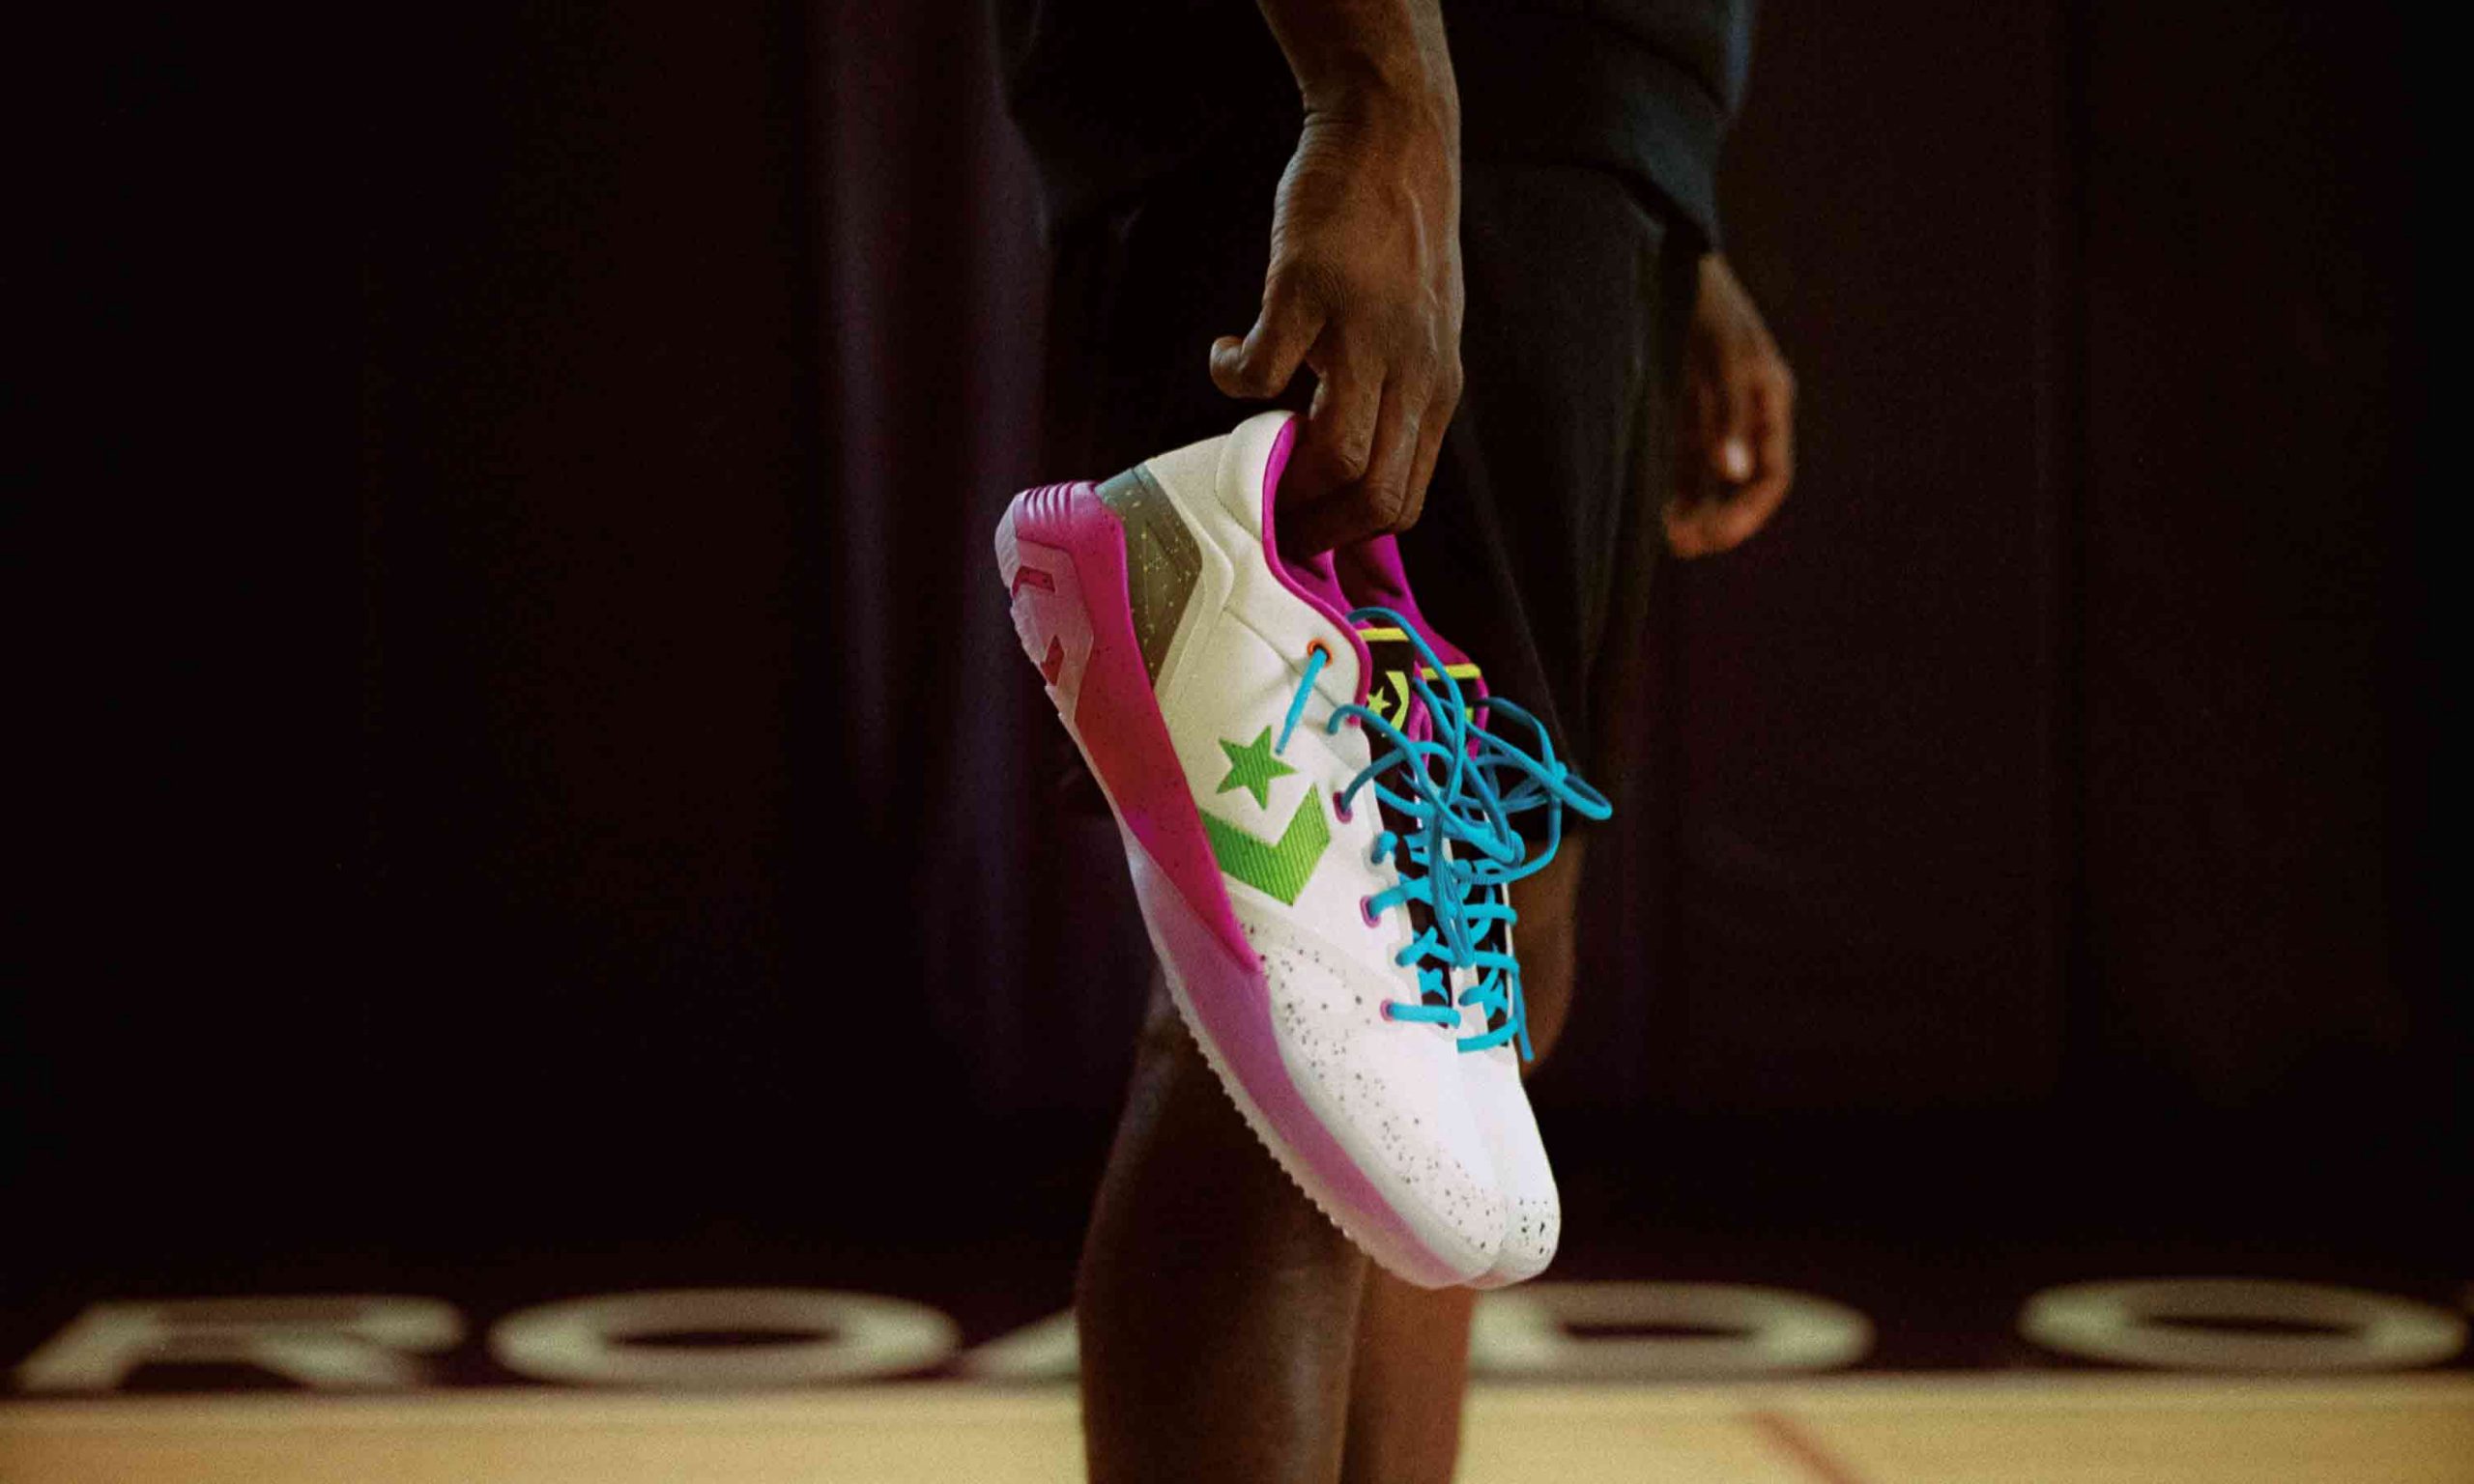 CONVERSE 全新推出 Graffiti 篮球鞋系列